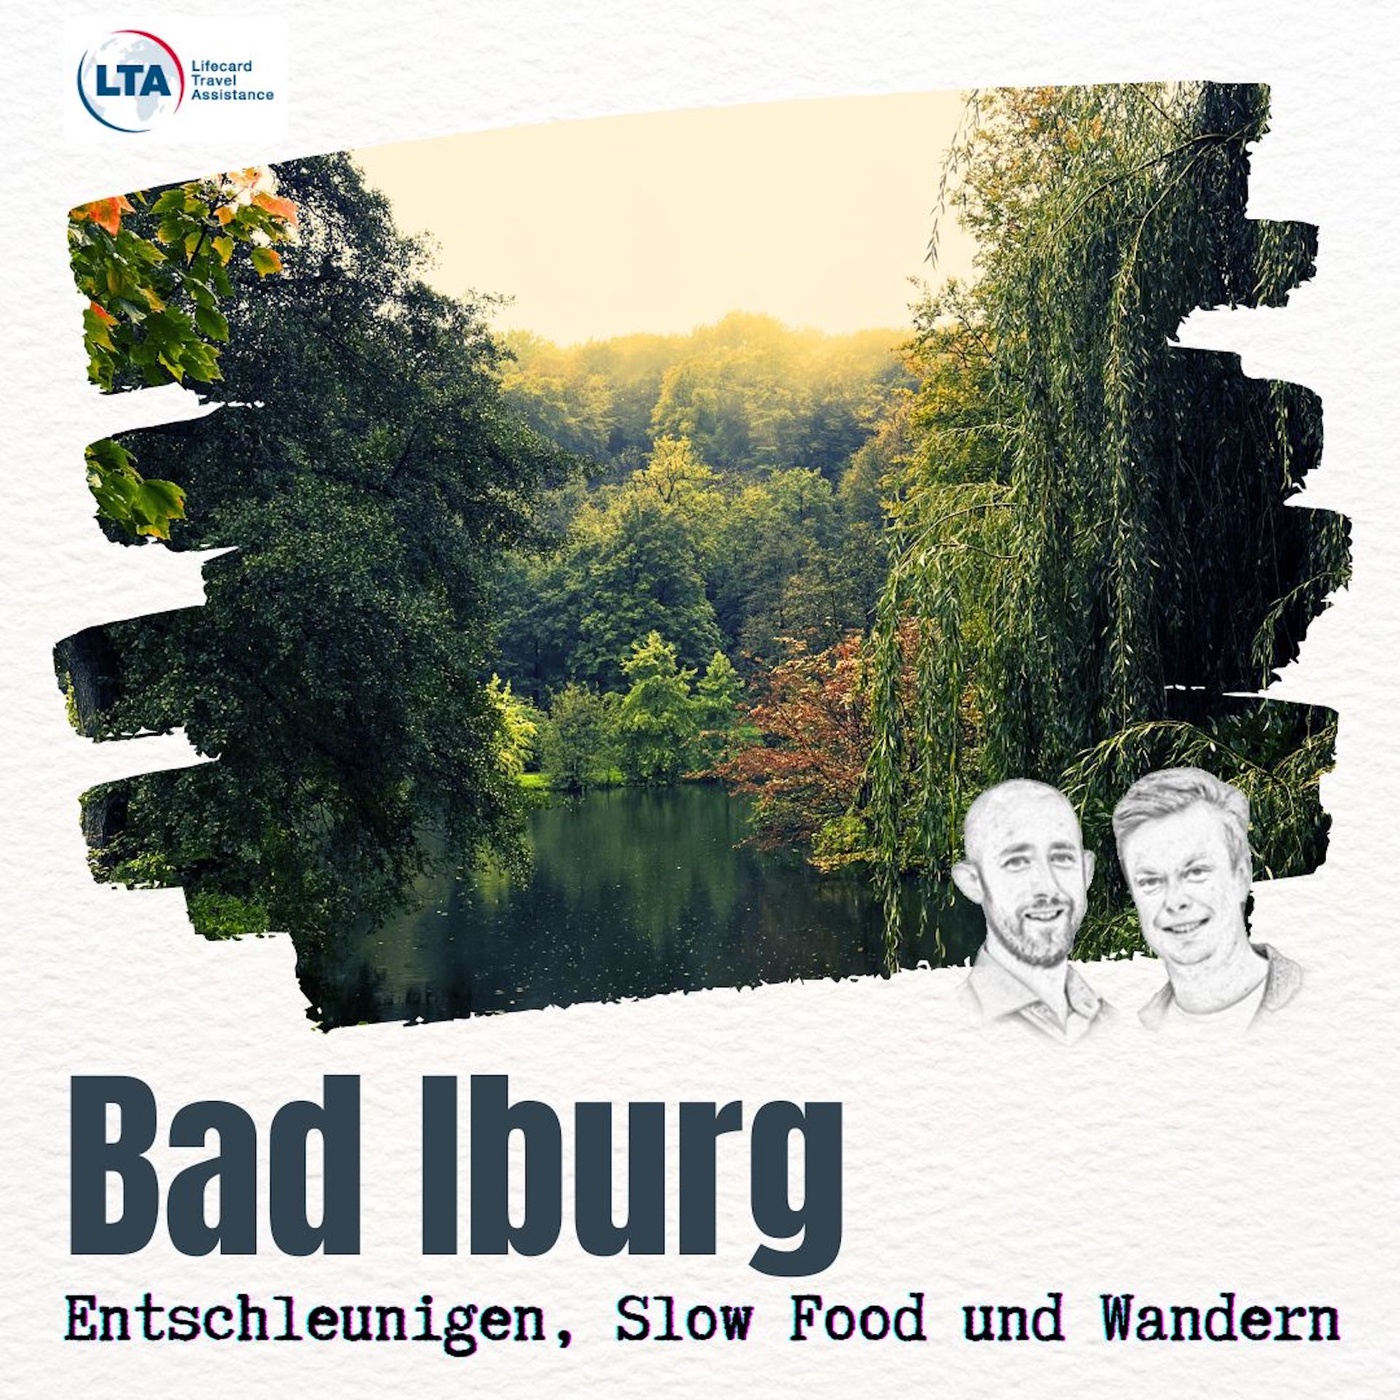 Bad Iburg: Entschleunigen, Slow Food und Wandern